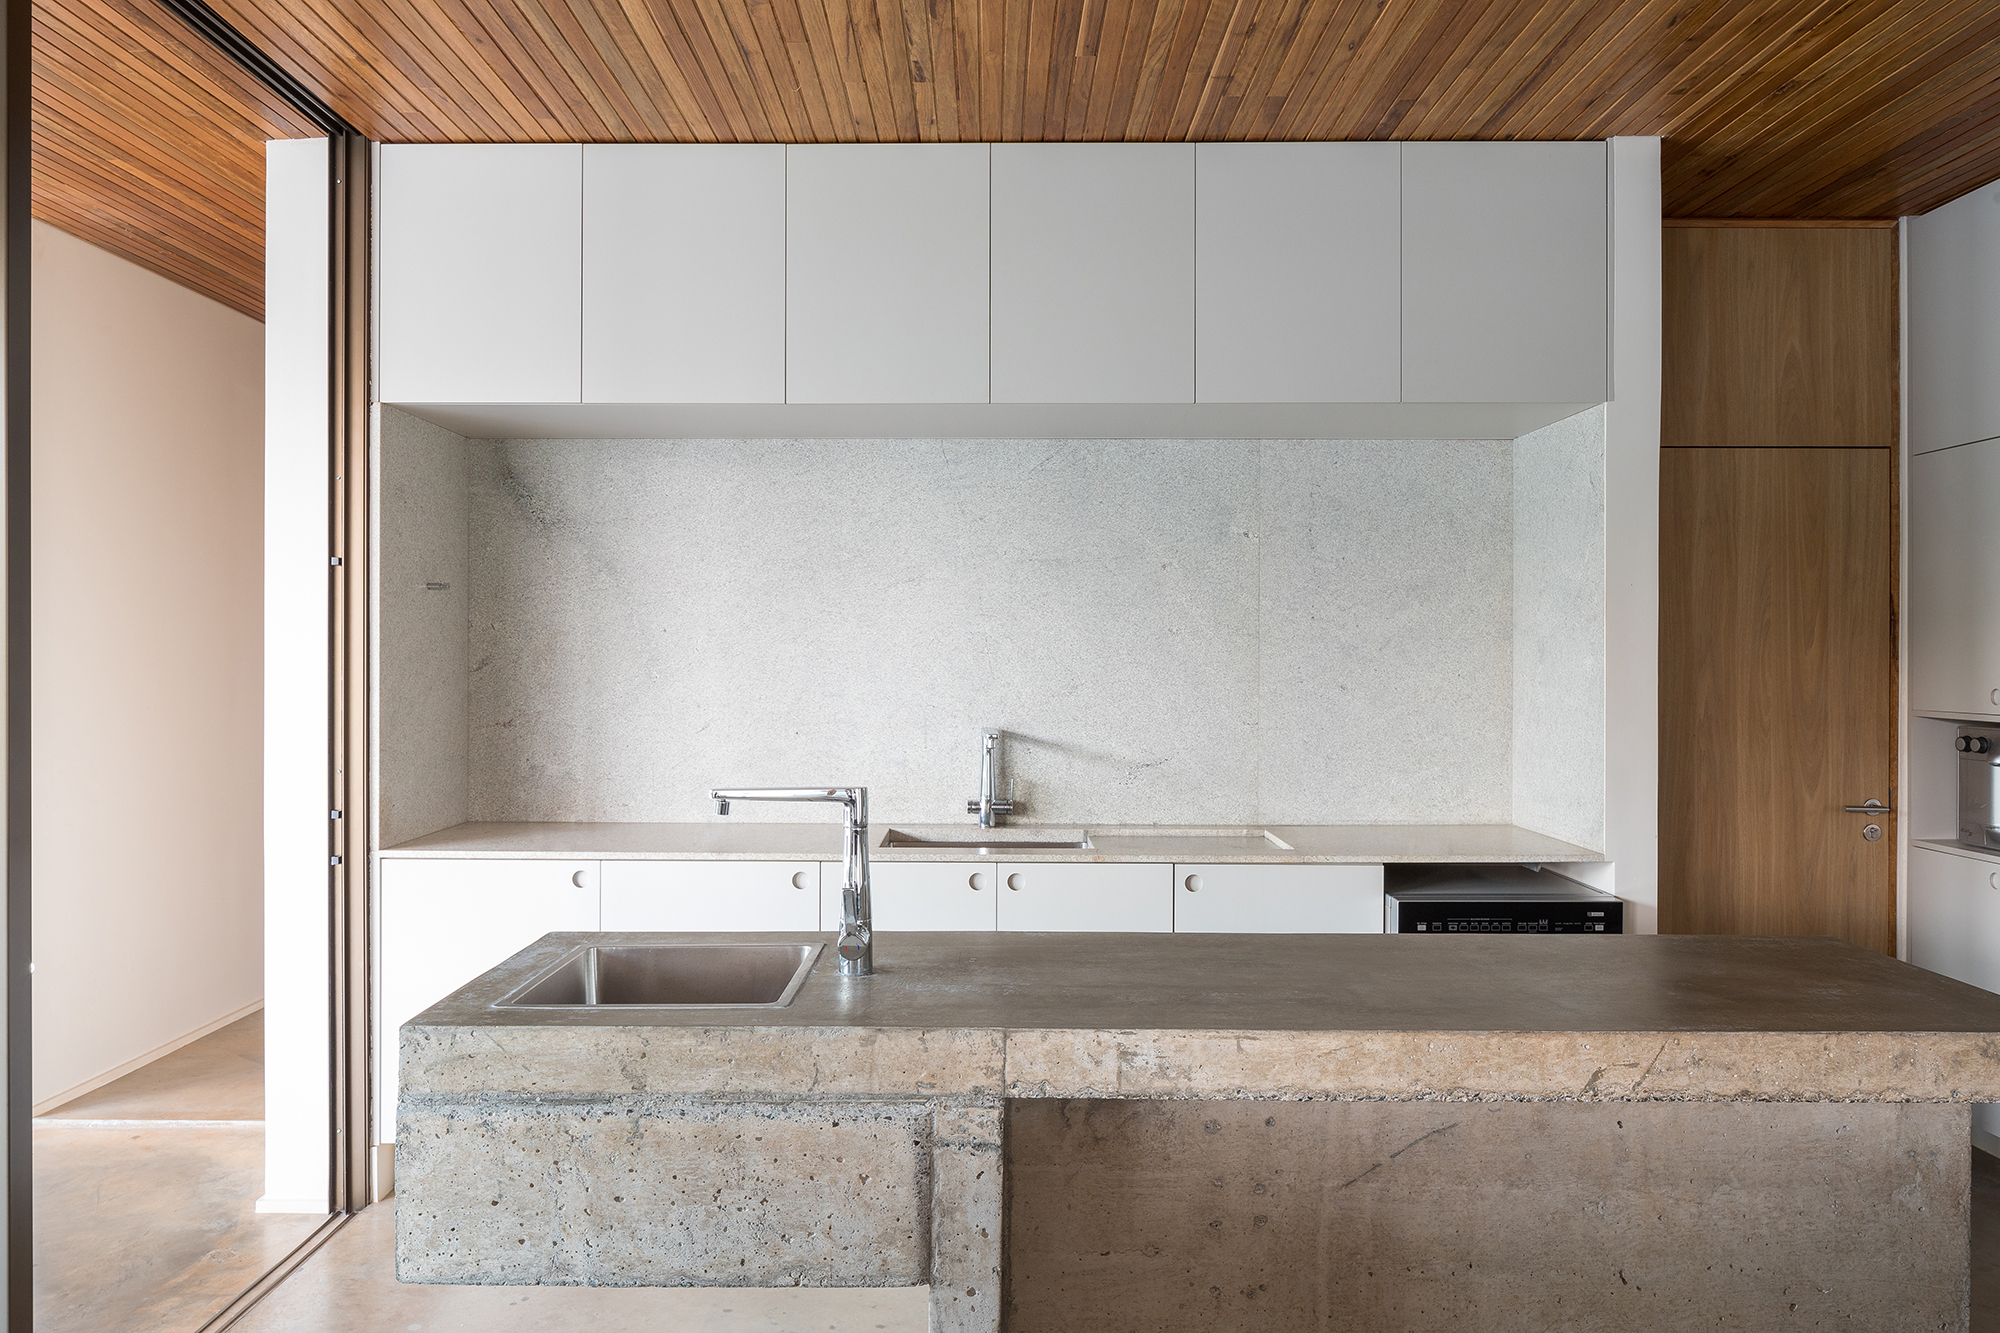 Dois volumes sobrepostos compõem esta casa de 500 m² em Brasília. Projeto de Bloco Arquitetos. Na foto, cozinha com bancada de concreto e armários.